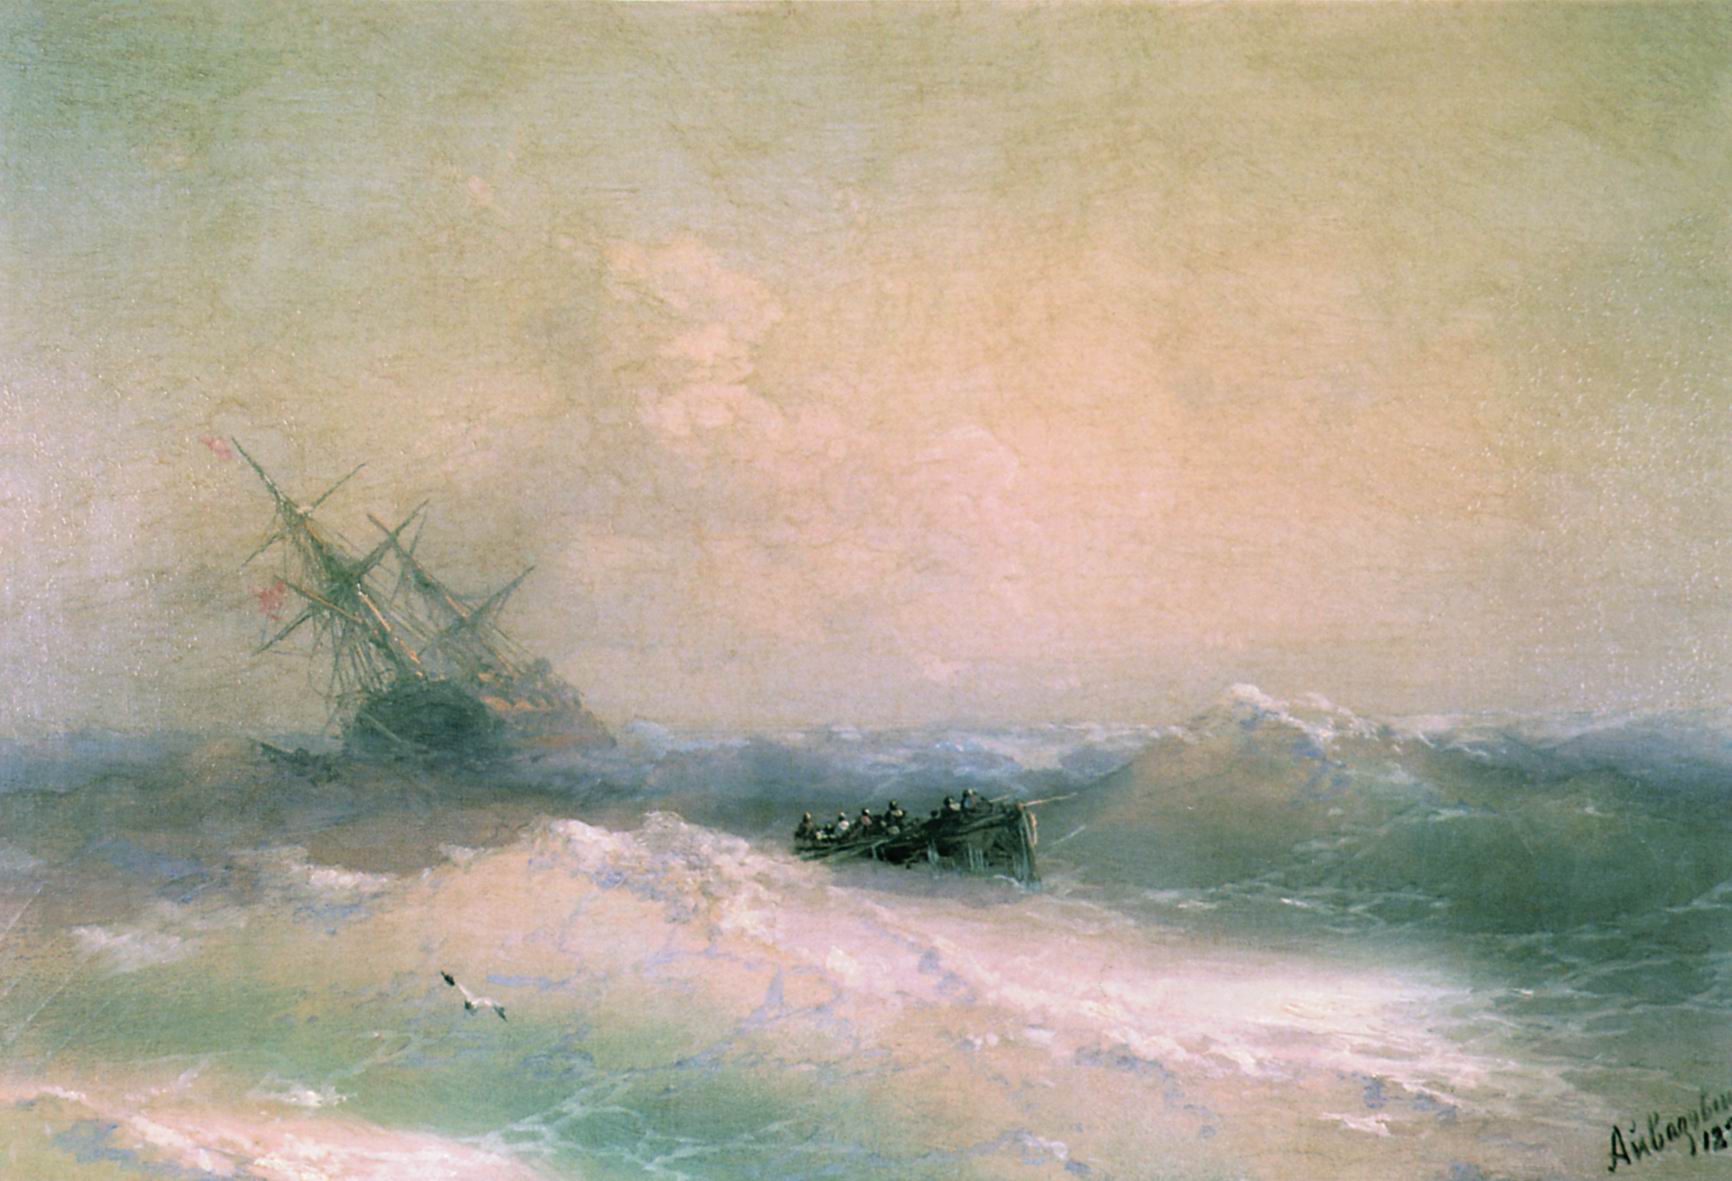 Айвазовский. Буря на море. 1893